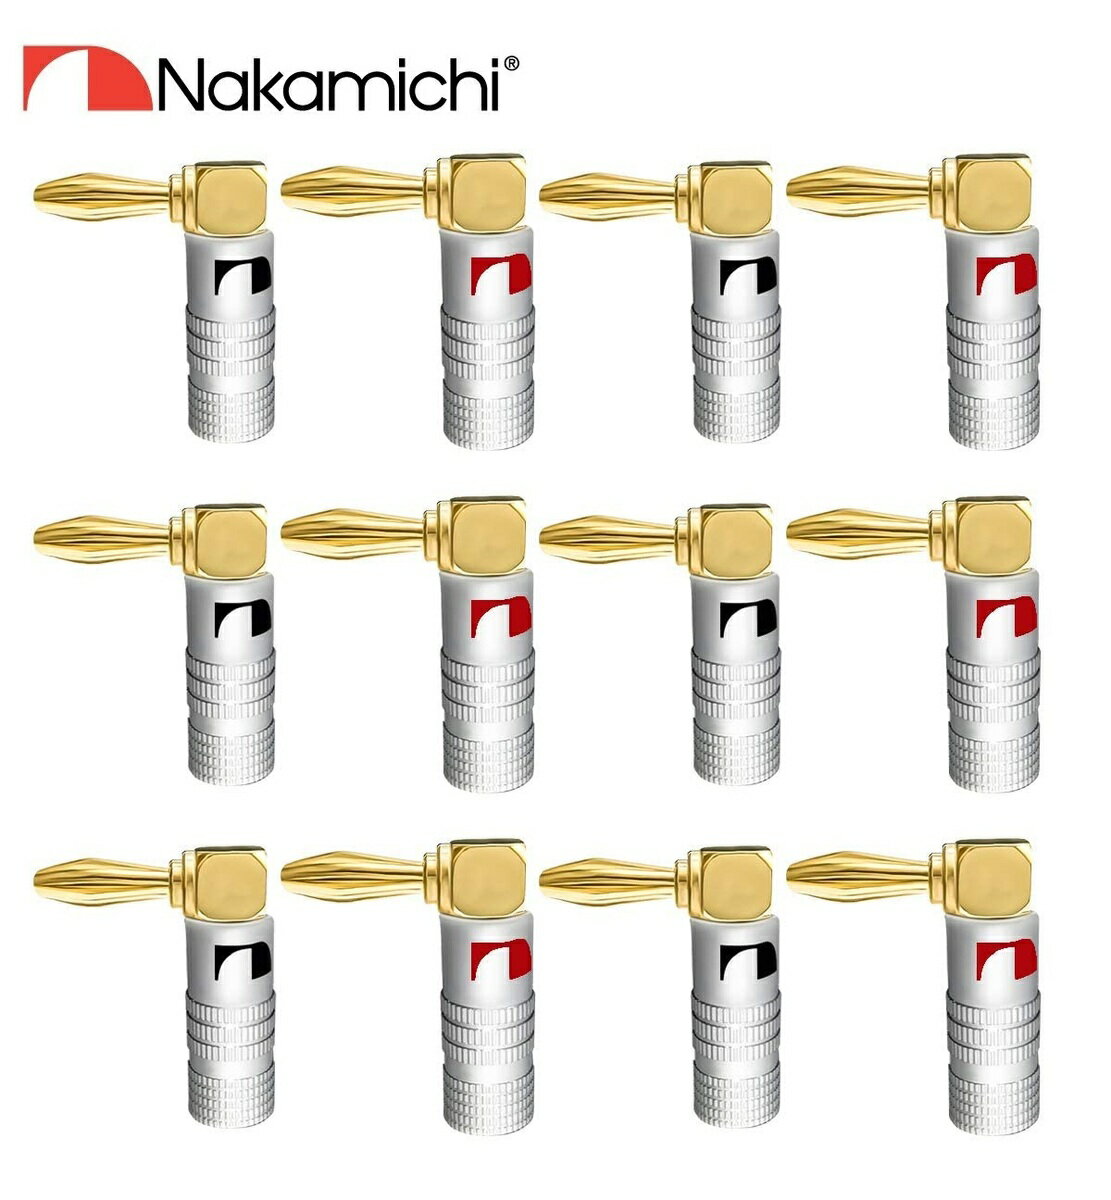 Nakamichi ナカミチ バナナプラグ L型 24K金メッキ アルミメタルシェル スピーカー ケーブル コネクター 12本